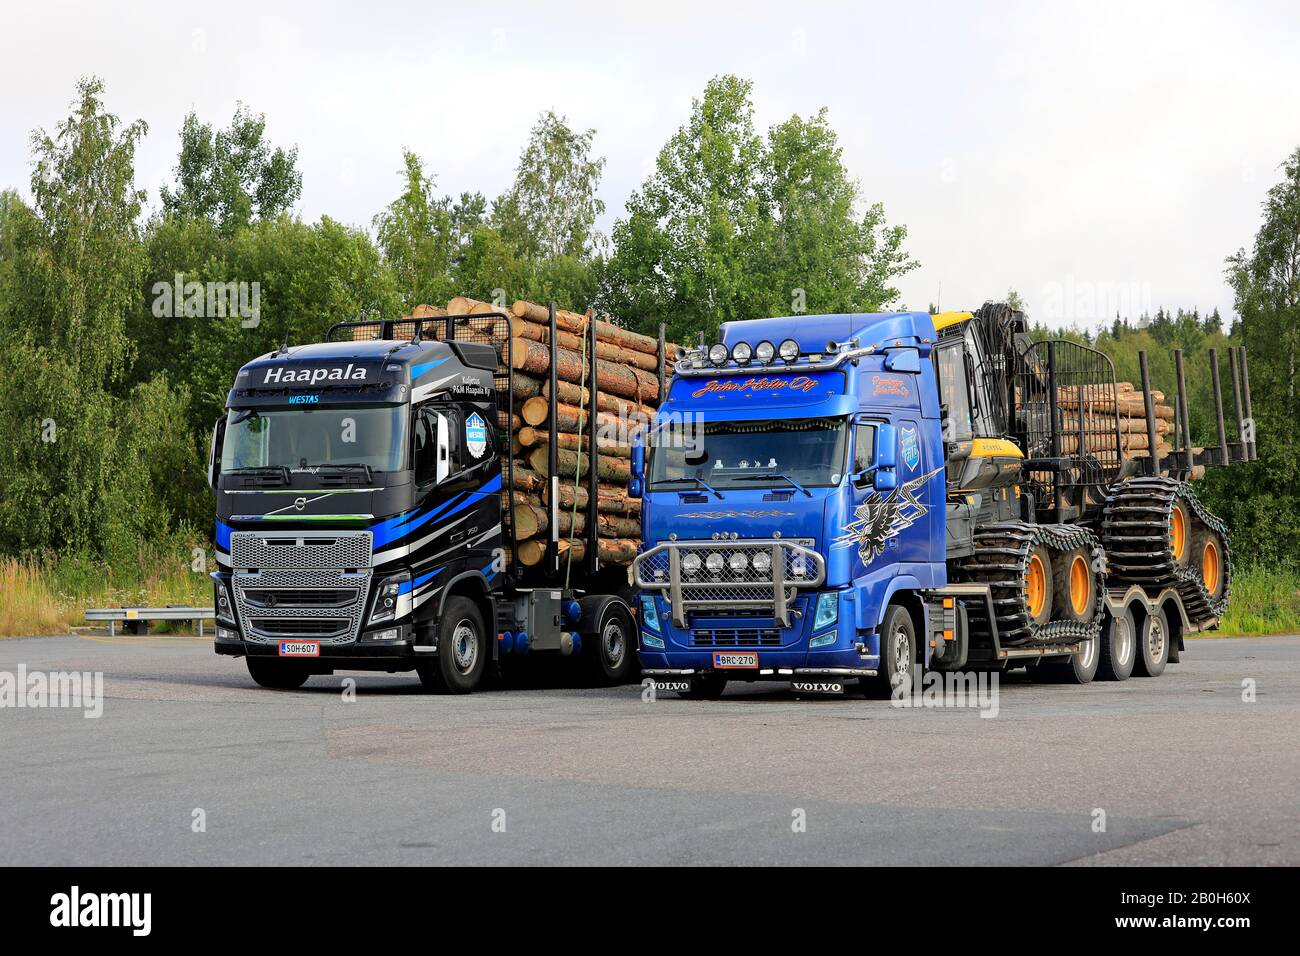 Camions Volvo FH de Haapala tirant une charge de grumes et de Juha Holm Oy tirant Ponsse machine forestière, garé côte à côte. Humppila, Finlande. 8 Août 2019 Banque D'Images